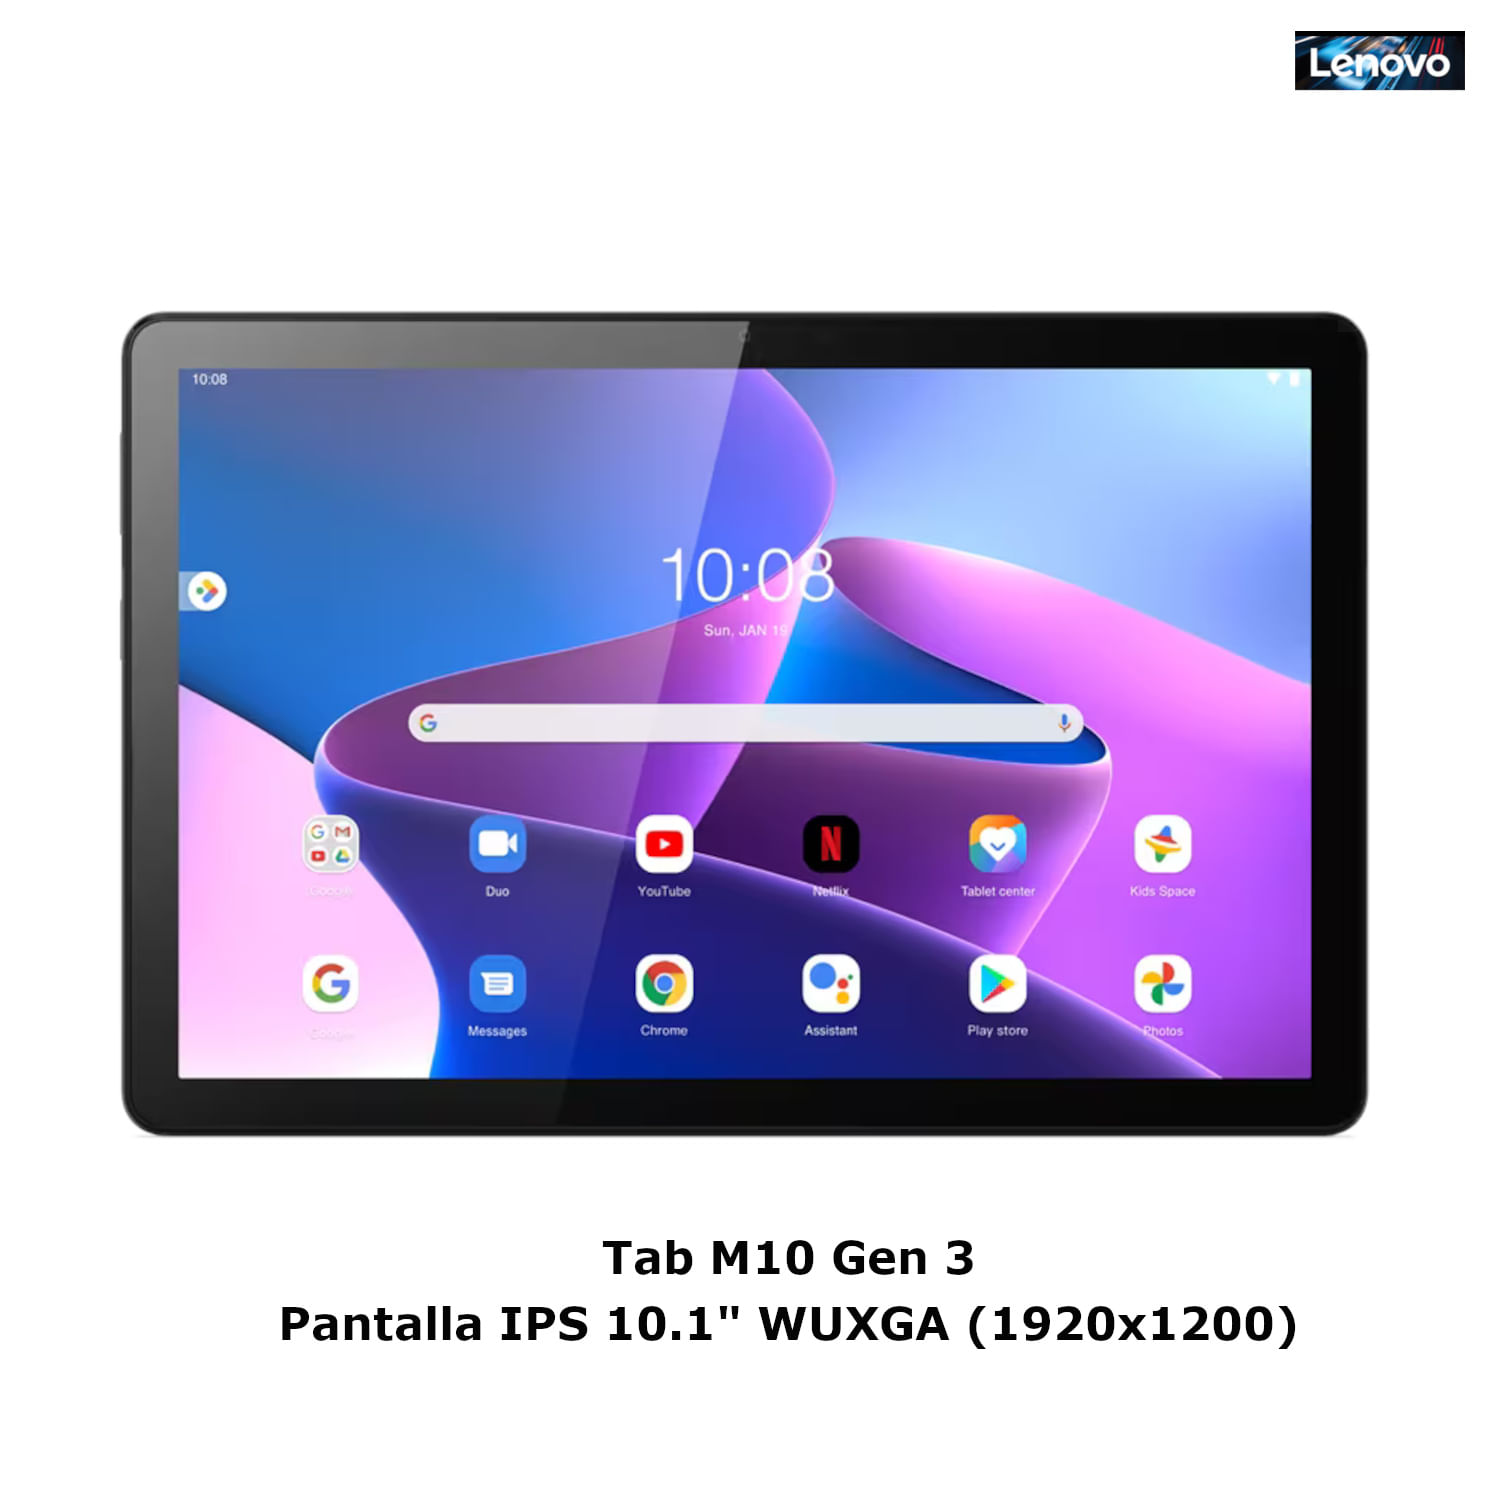 Tablet Lenovo Tab M10 Gen4 IPS 101 WUXGA 64GB 4G LTE Folio Case